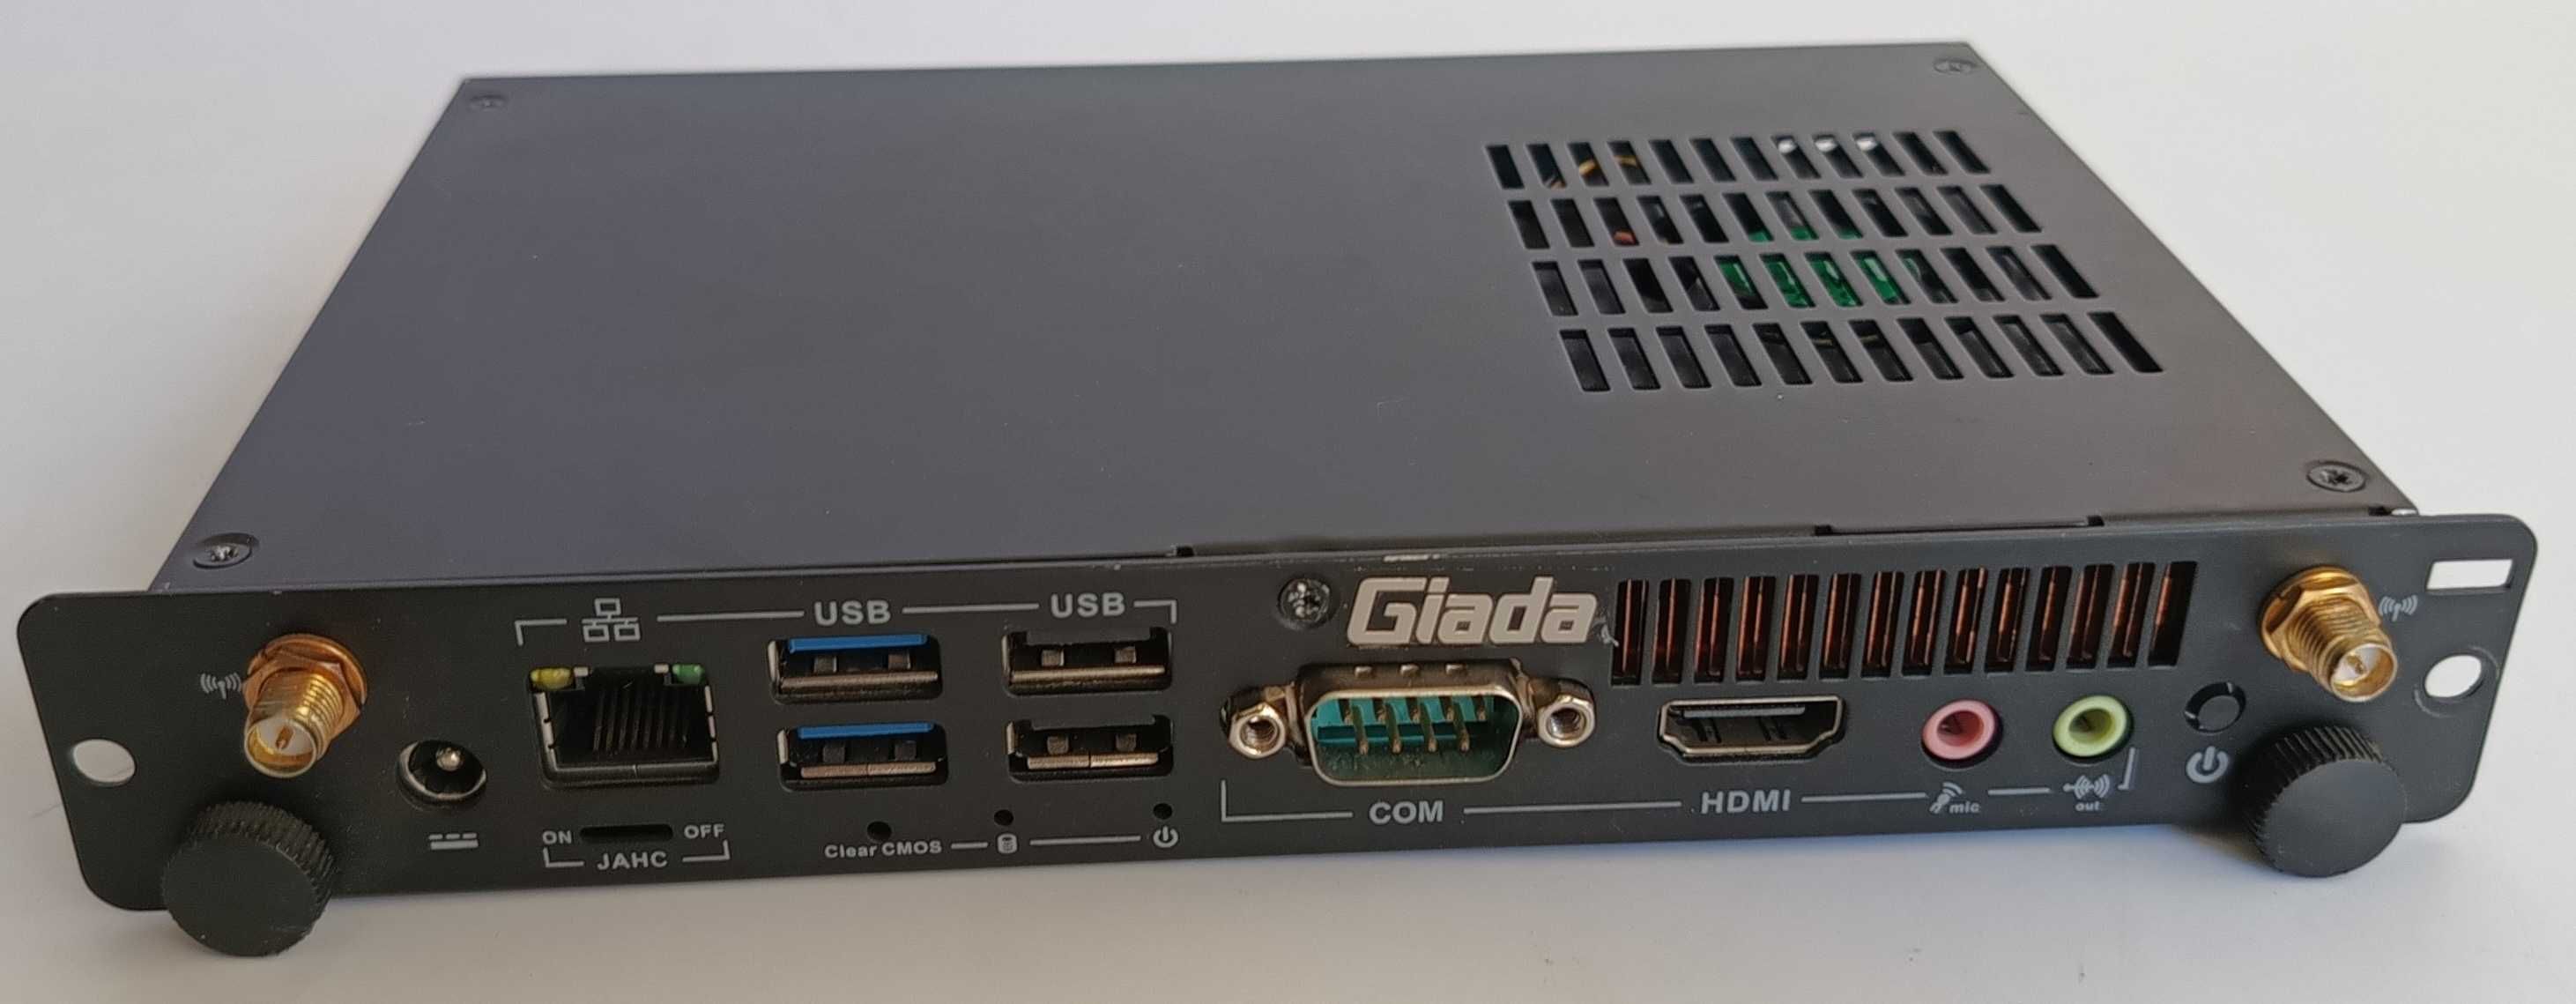 Przemysłowy PC Giada P211 P3205U/4GB/60GB/Linux [GIADA3]